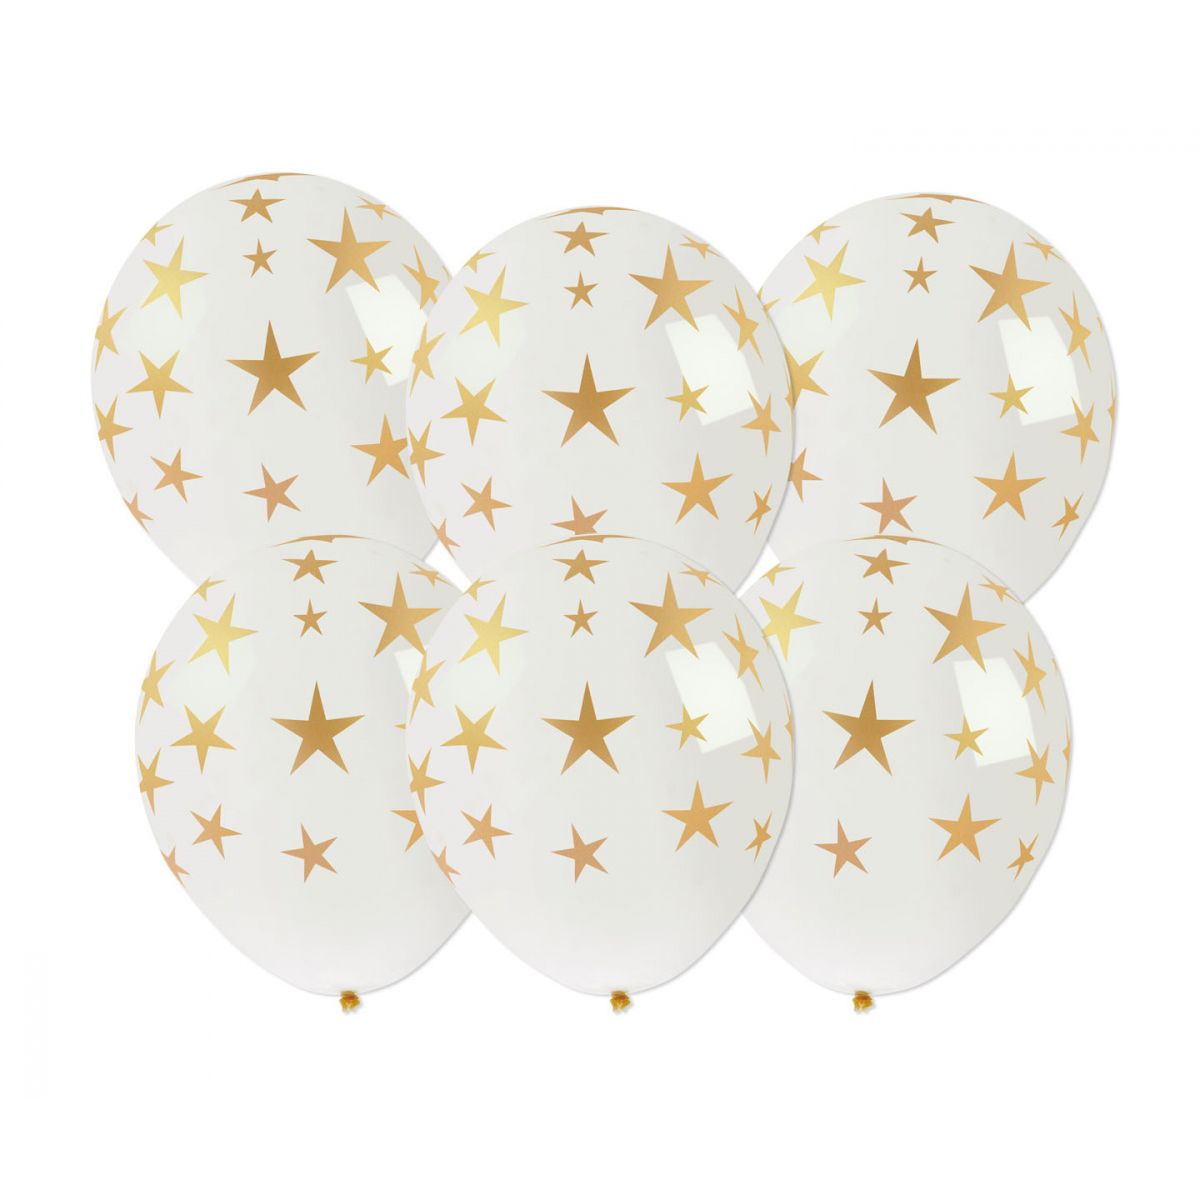 Balon gumowy Arpex Golden party ze złotym nadrukiem gwiazdki 6szt. biały 250mm (KB8190)